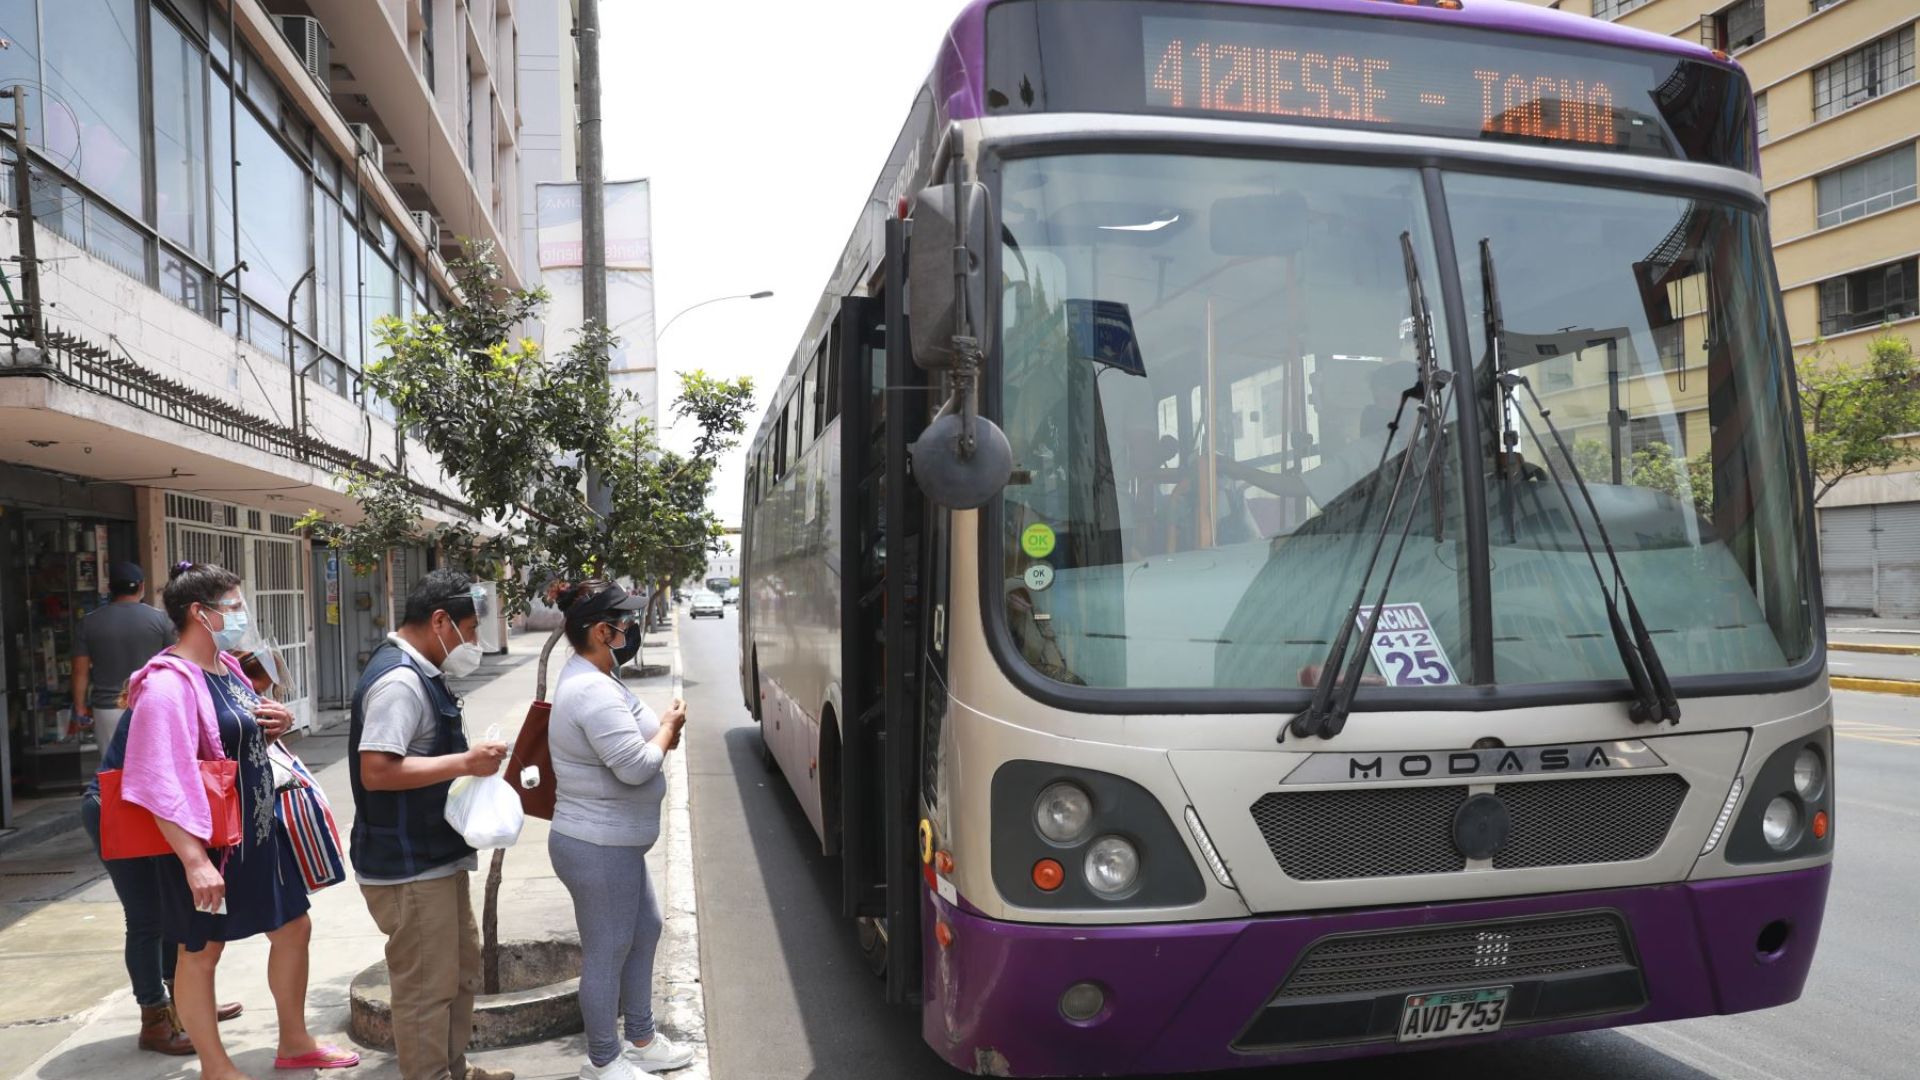 Corredor Morado solo funcionaría hasta fin de mes: crisis no mejora y buses suspenderán servicio de transporte